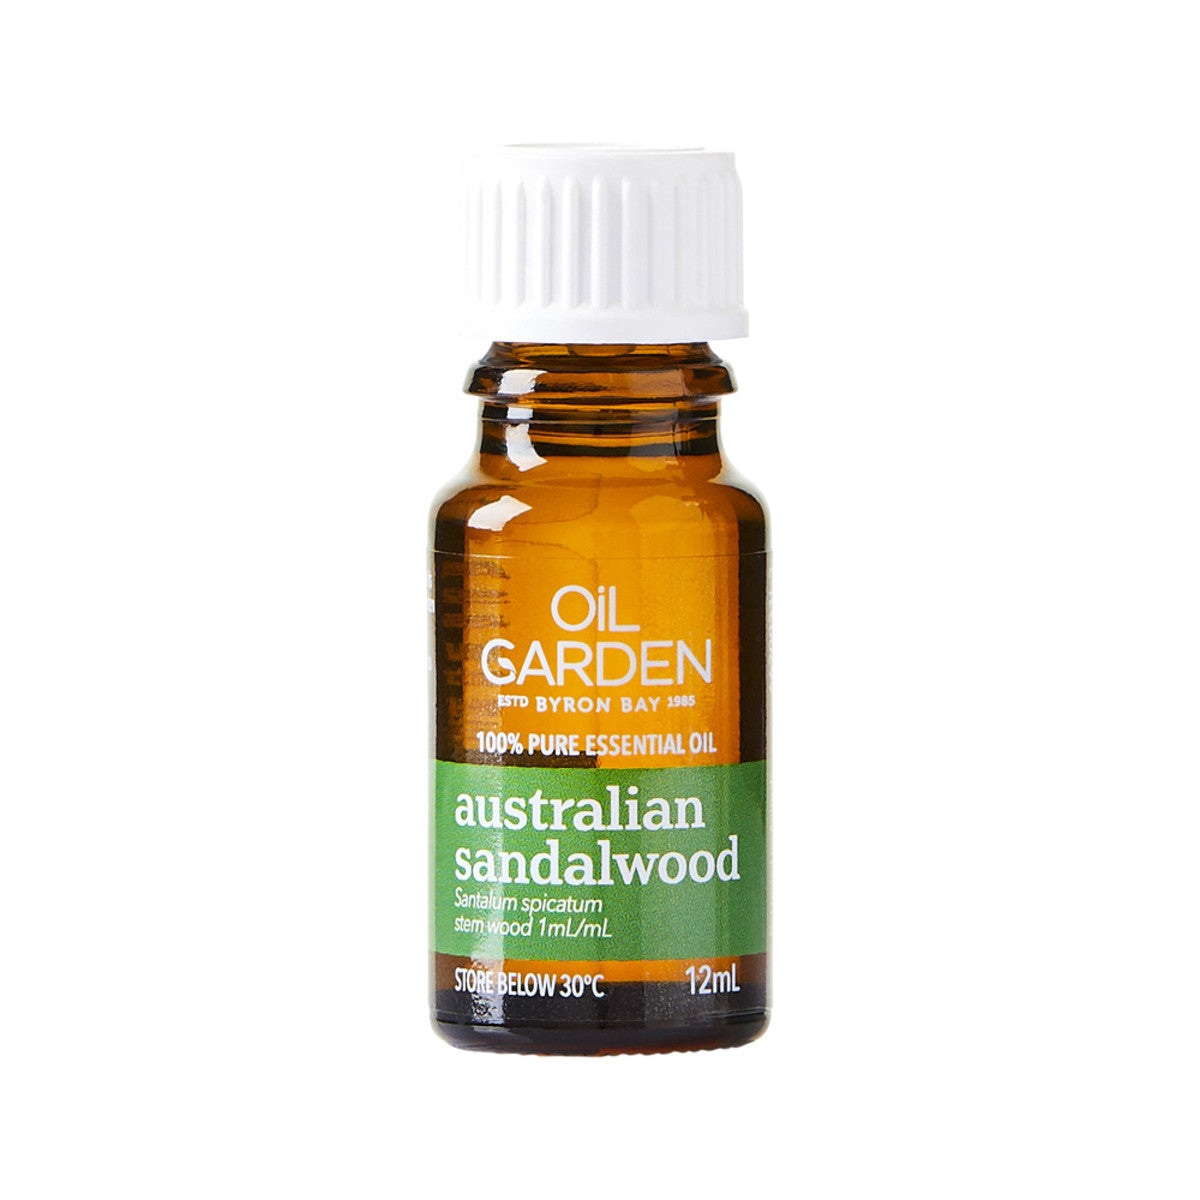 Oil Garden Essential Oil Sandalwood Australian 12ml